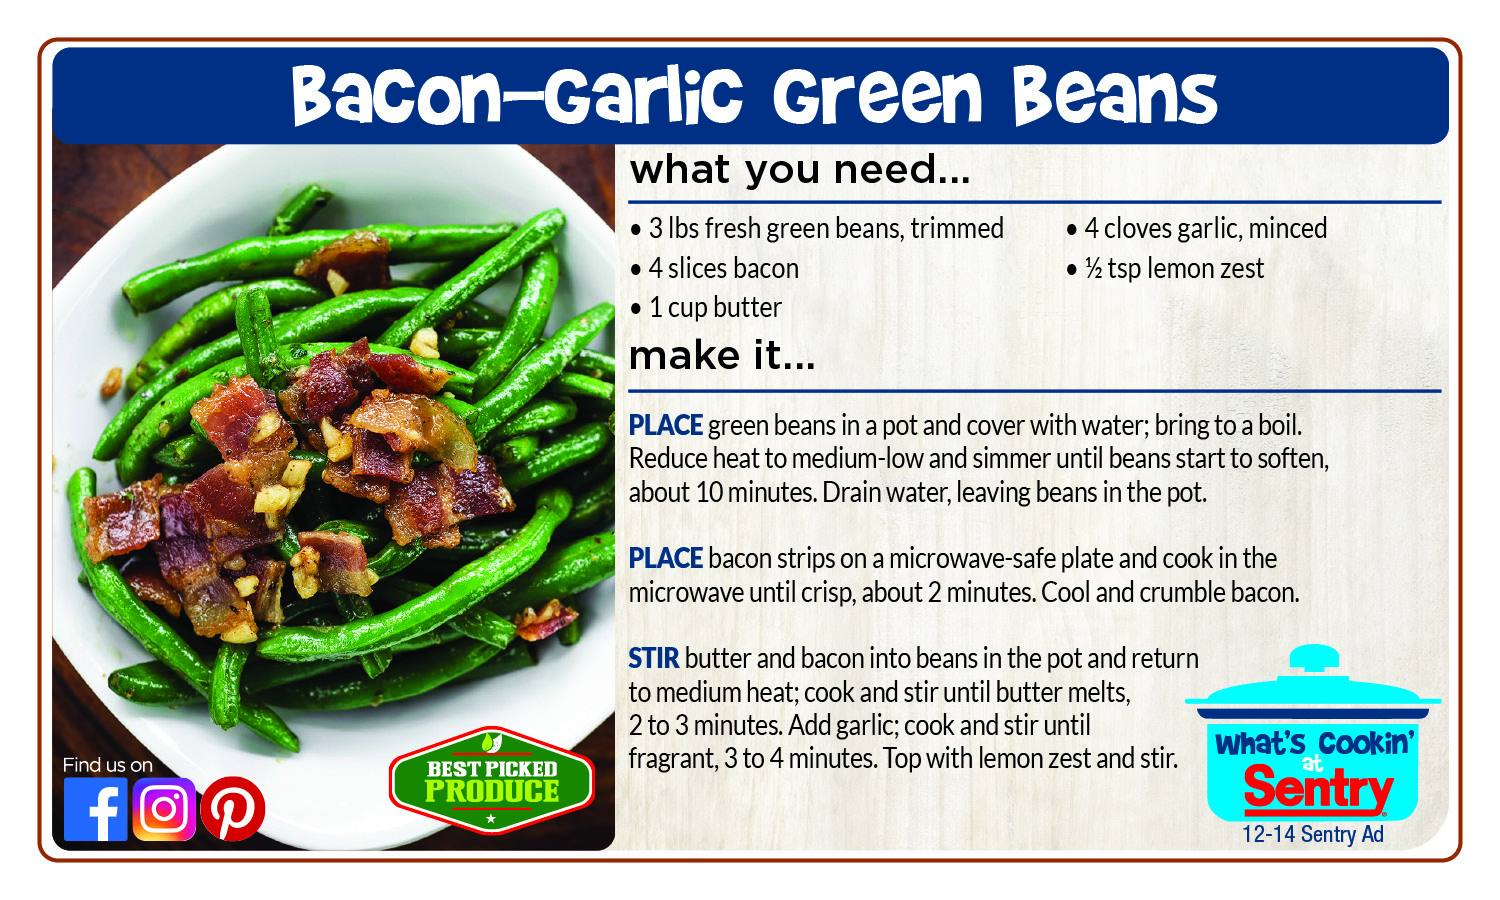 Bacon-Garlic Green Beans